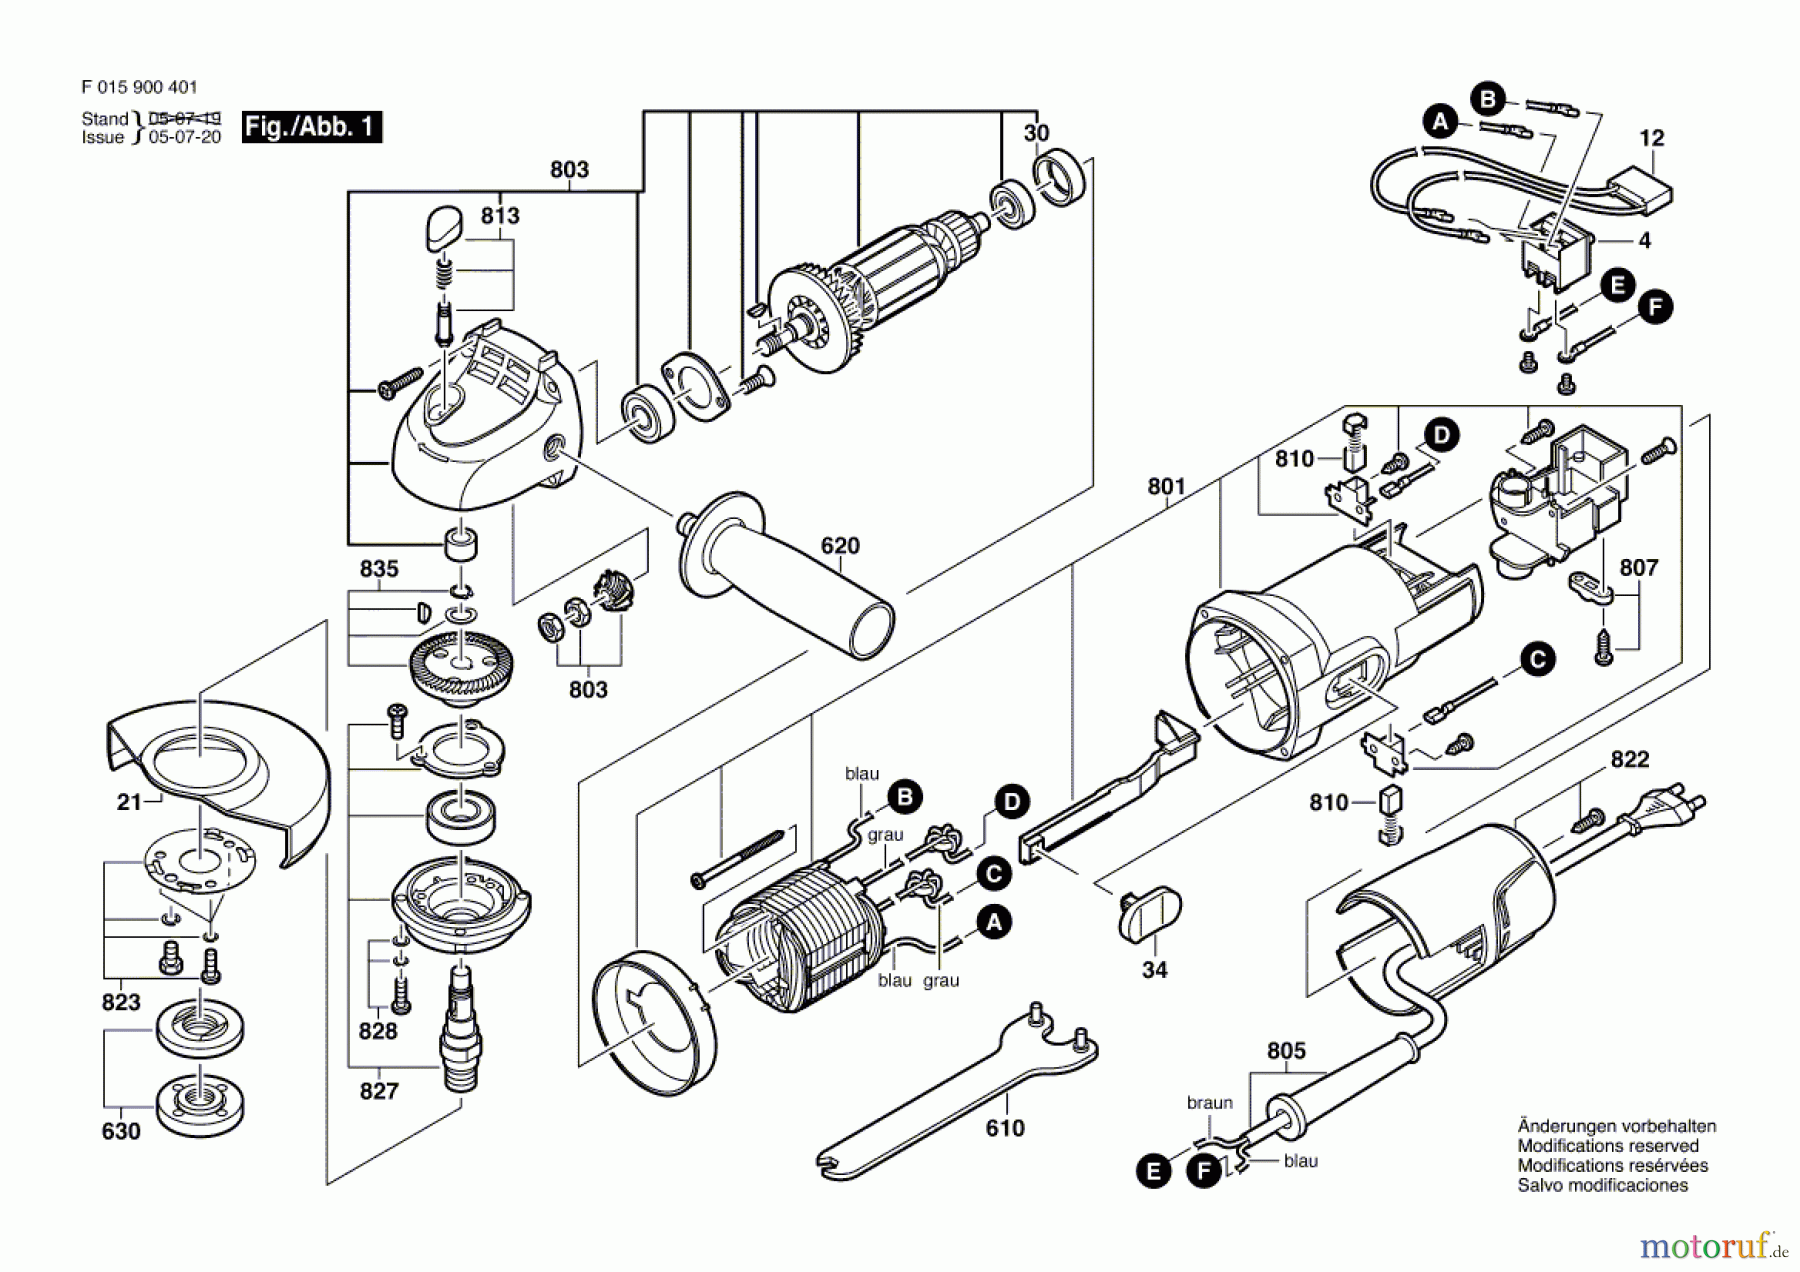  Bosch Werkzeug Winkelschleifer 9135 Seite 1